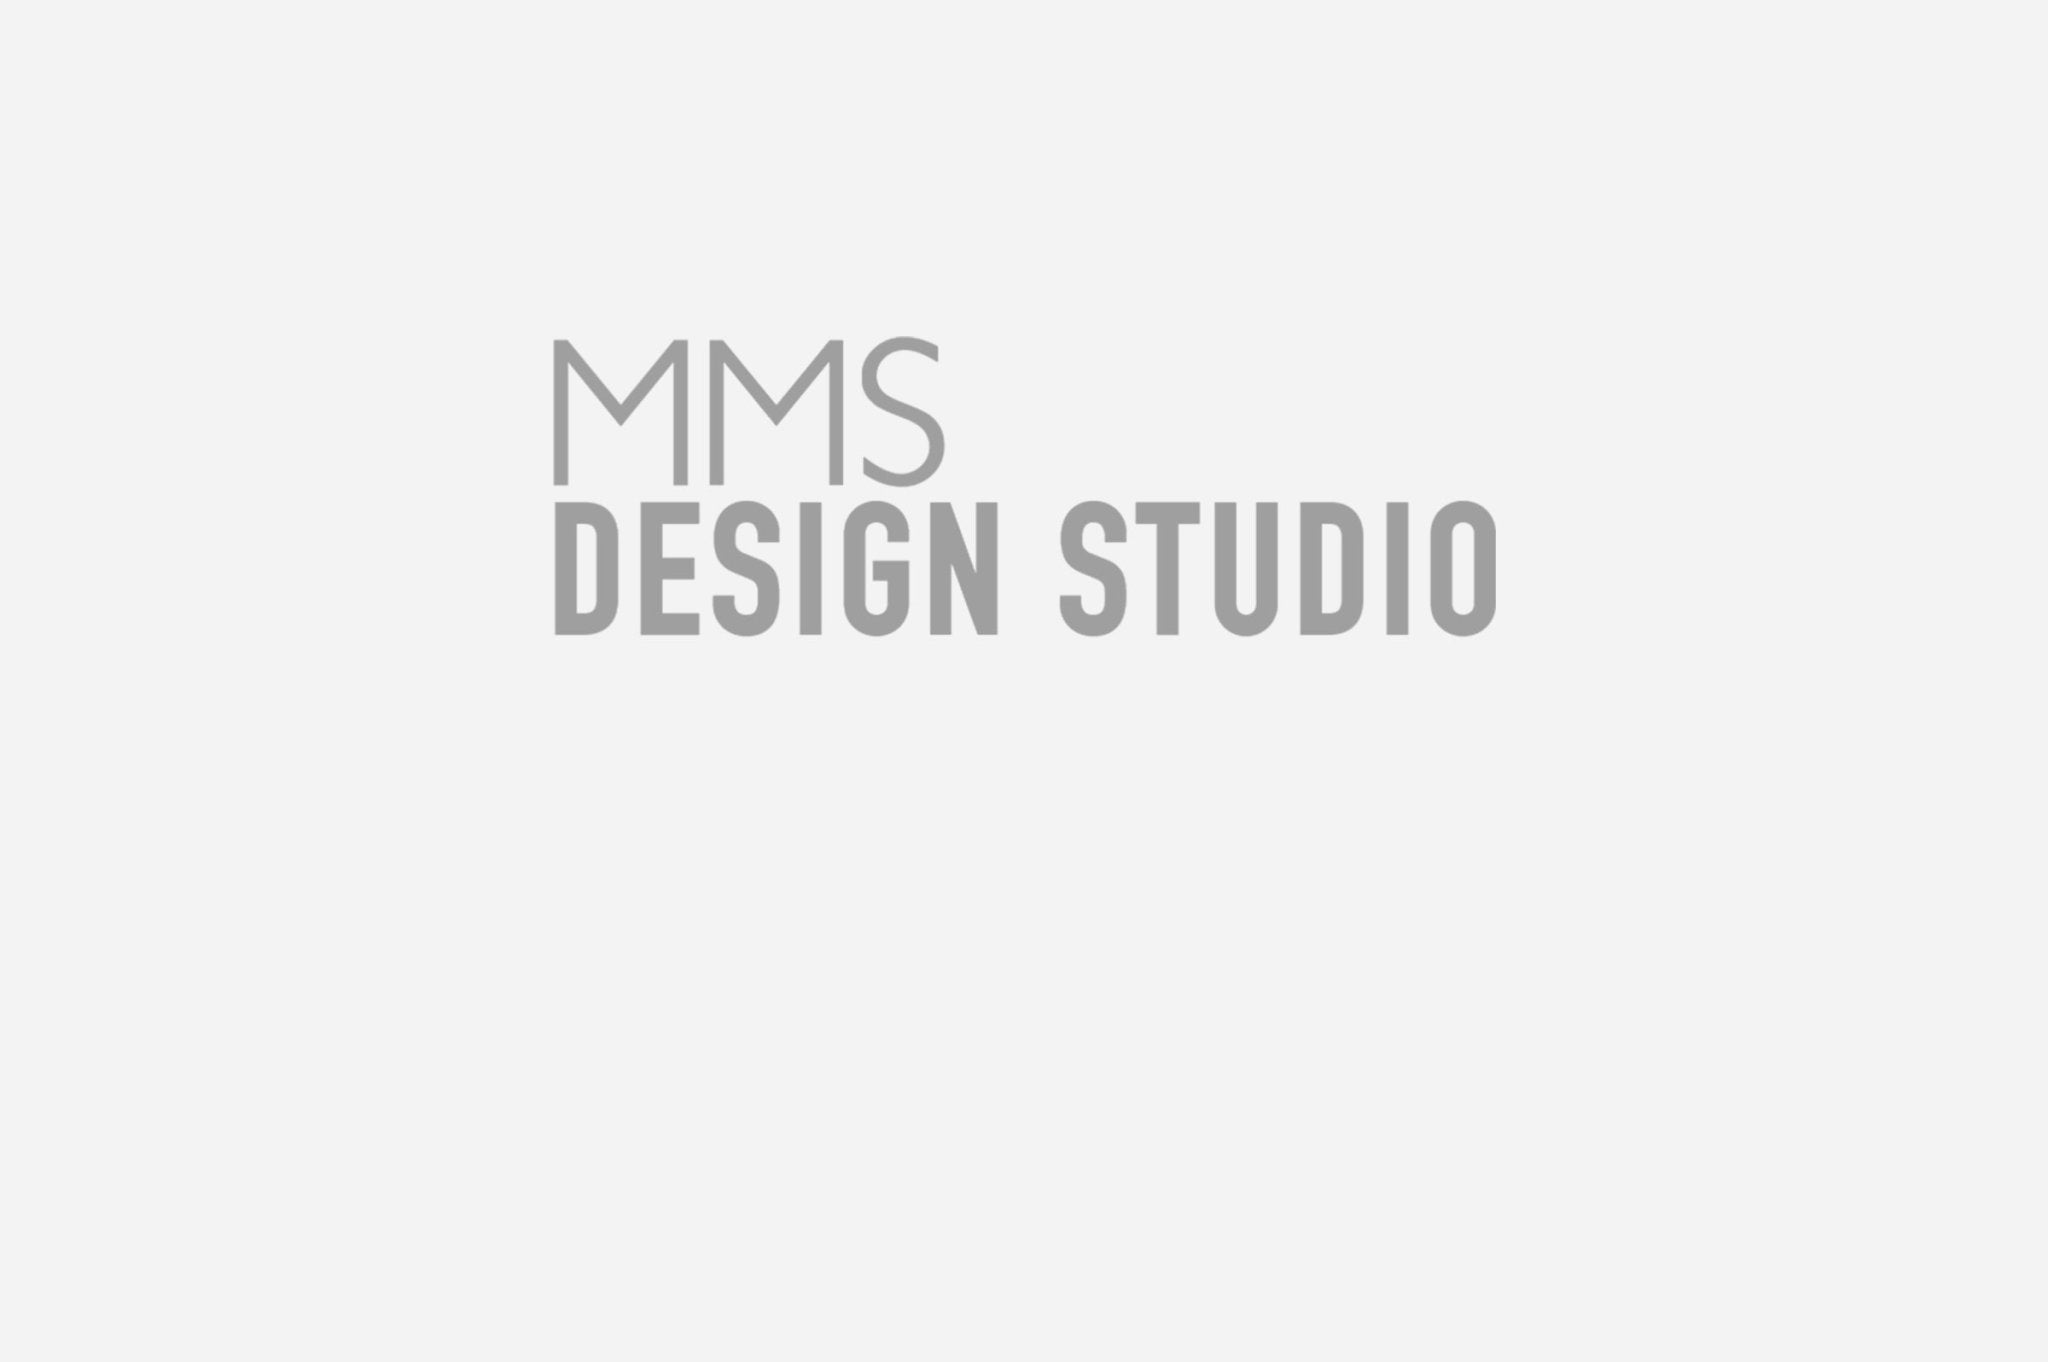 MMS Design Studio